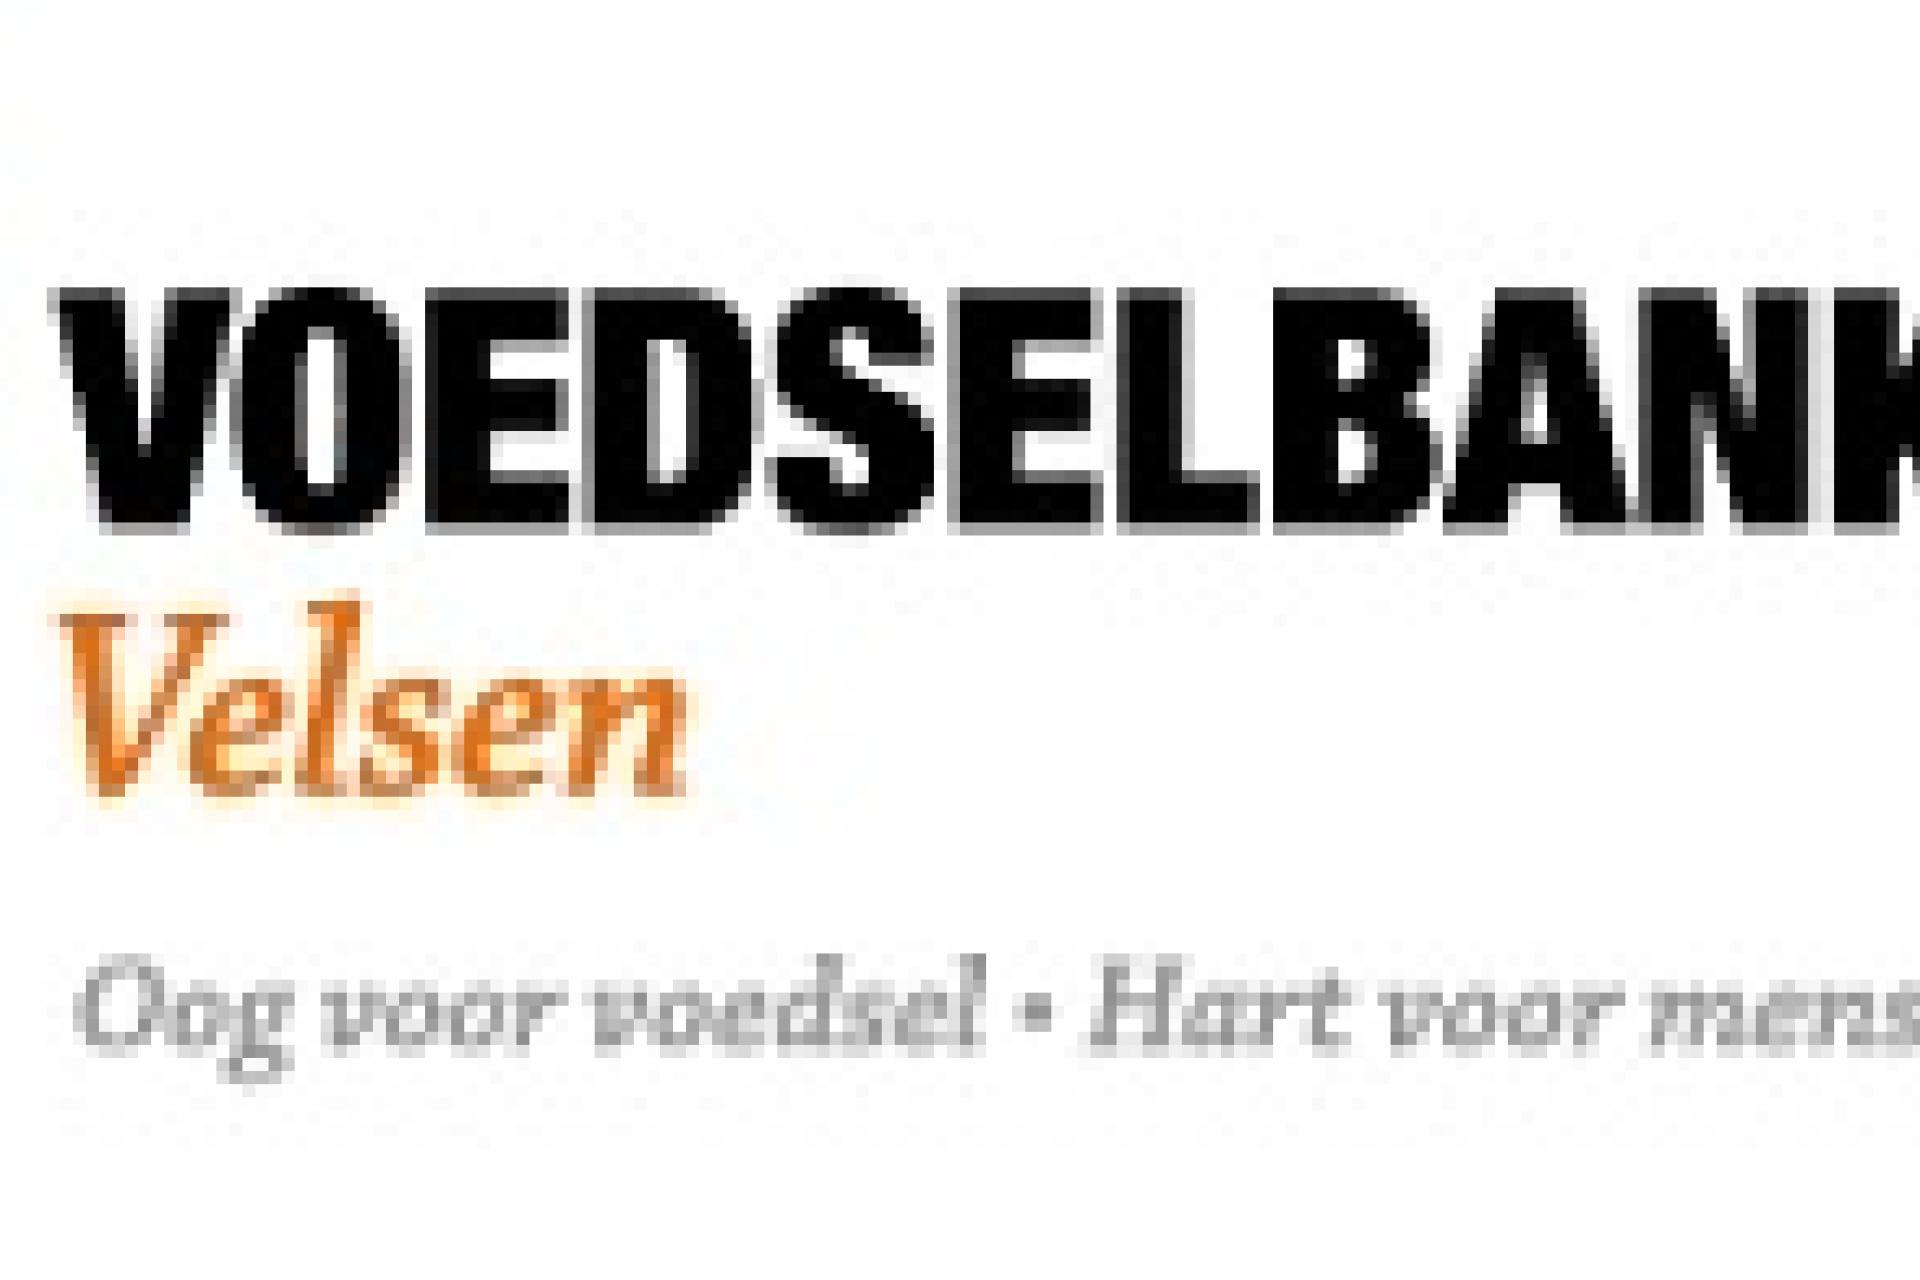 Logo Voedselbanken.nl - Velsen